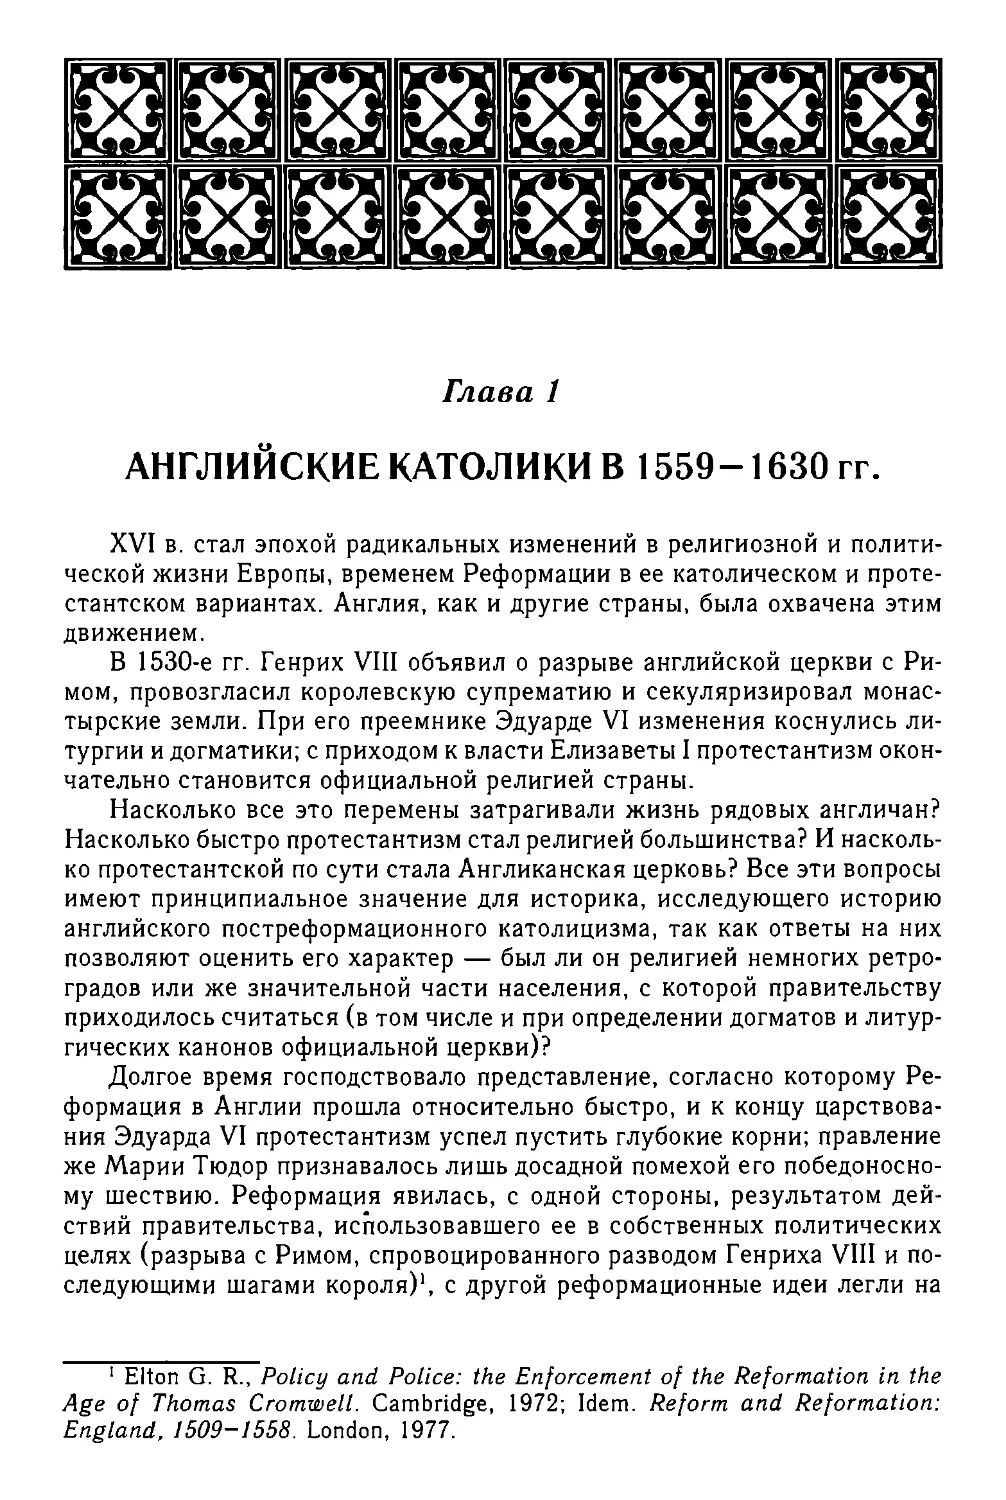 АНГЛИЙСКИЕ КАТОЛИКИ В 1559 – 1630 гг.